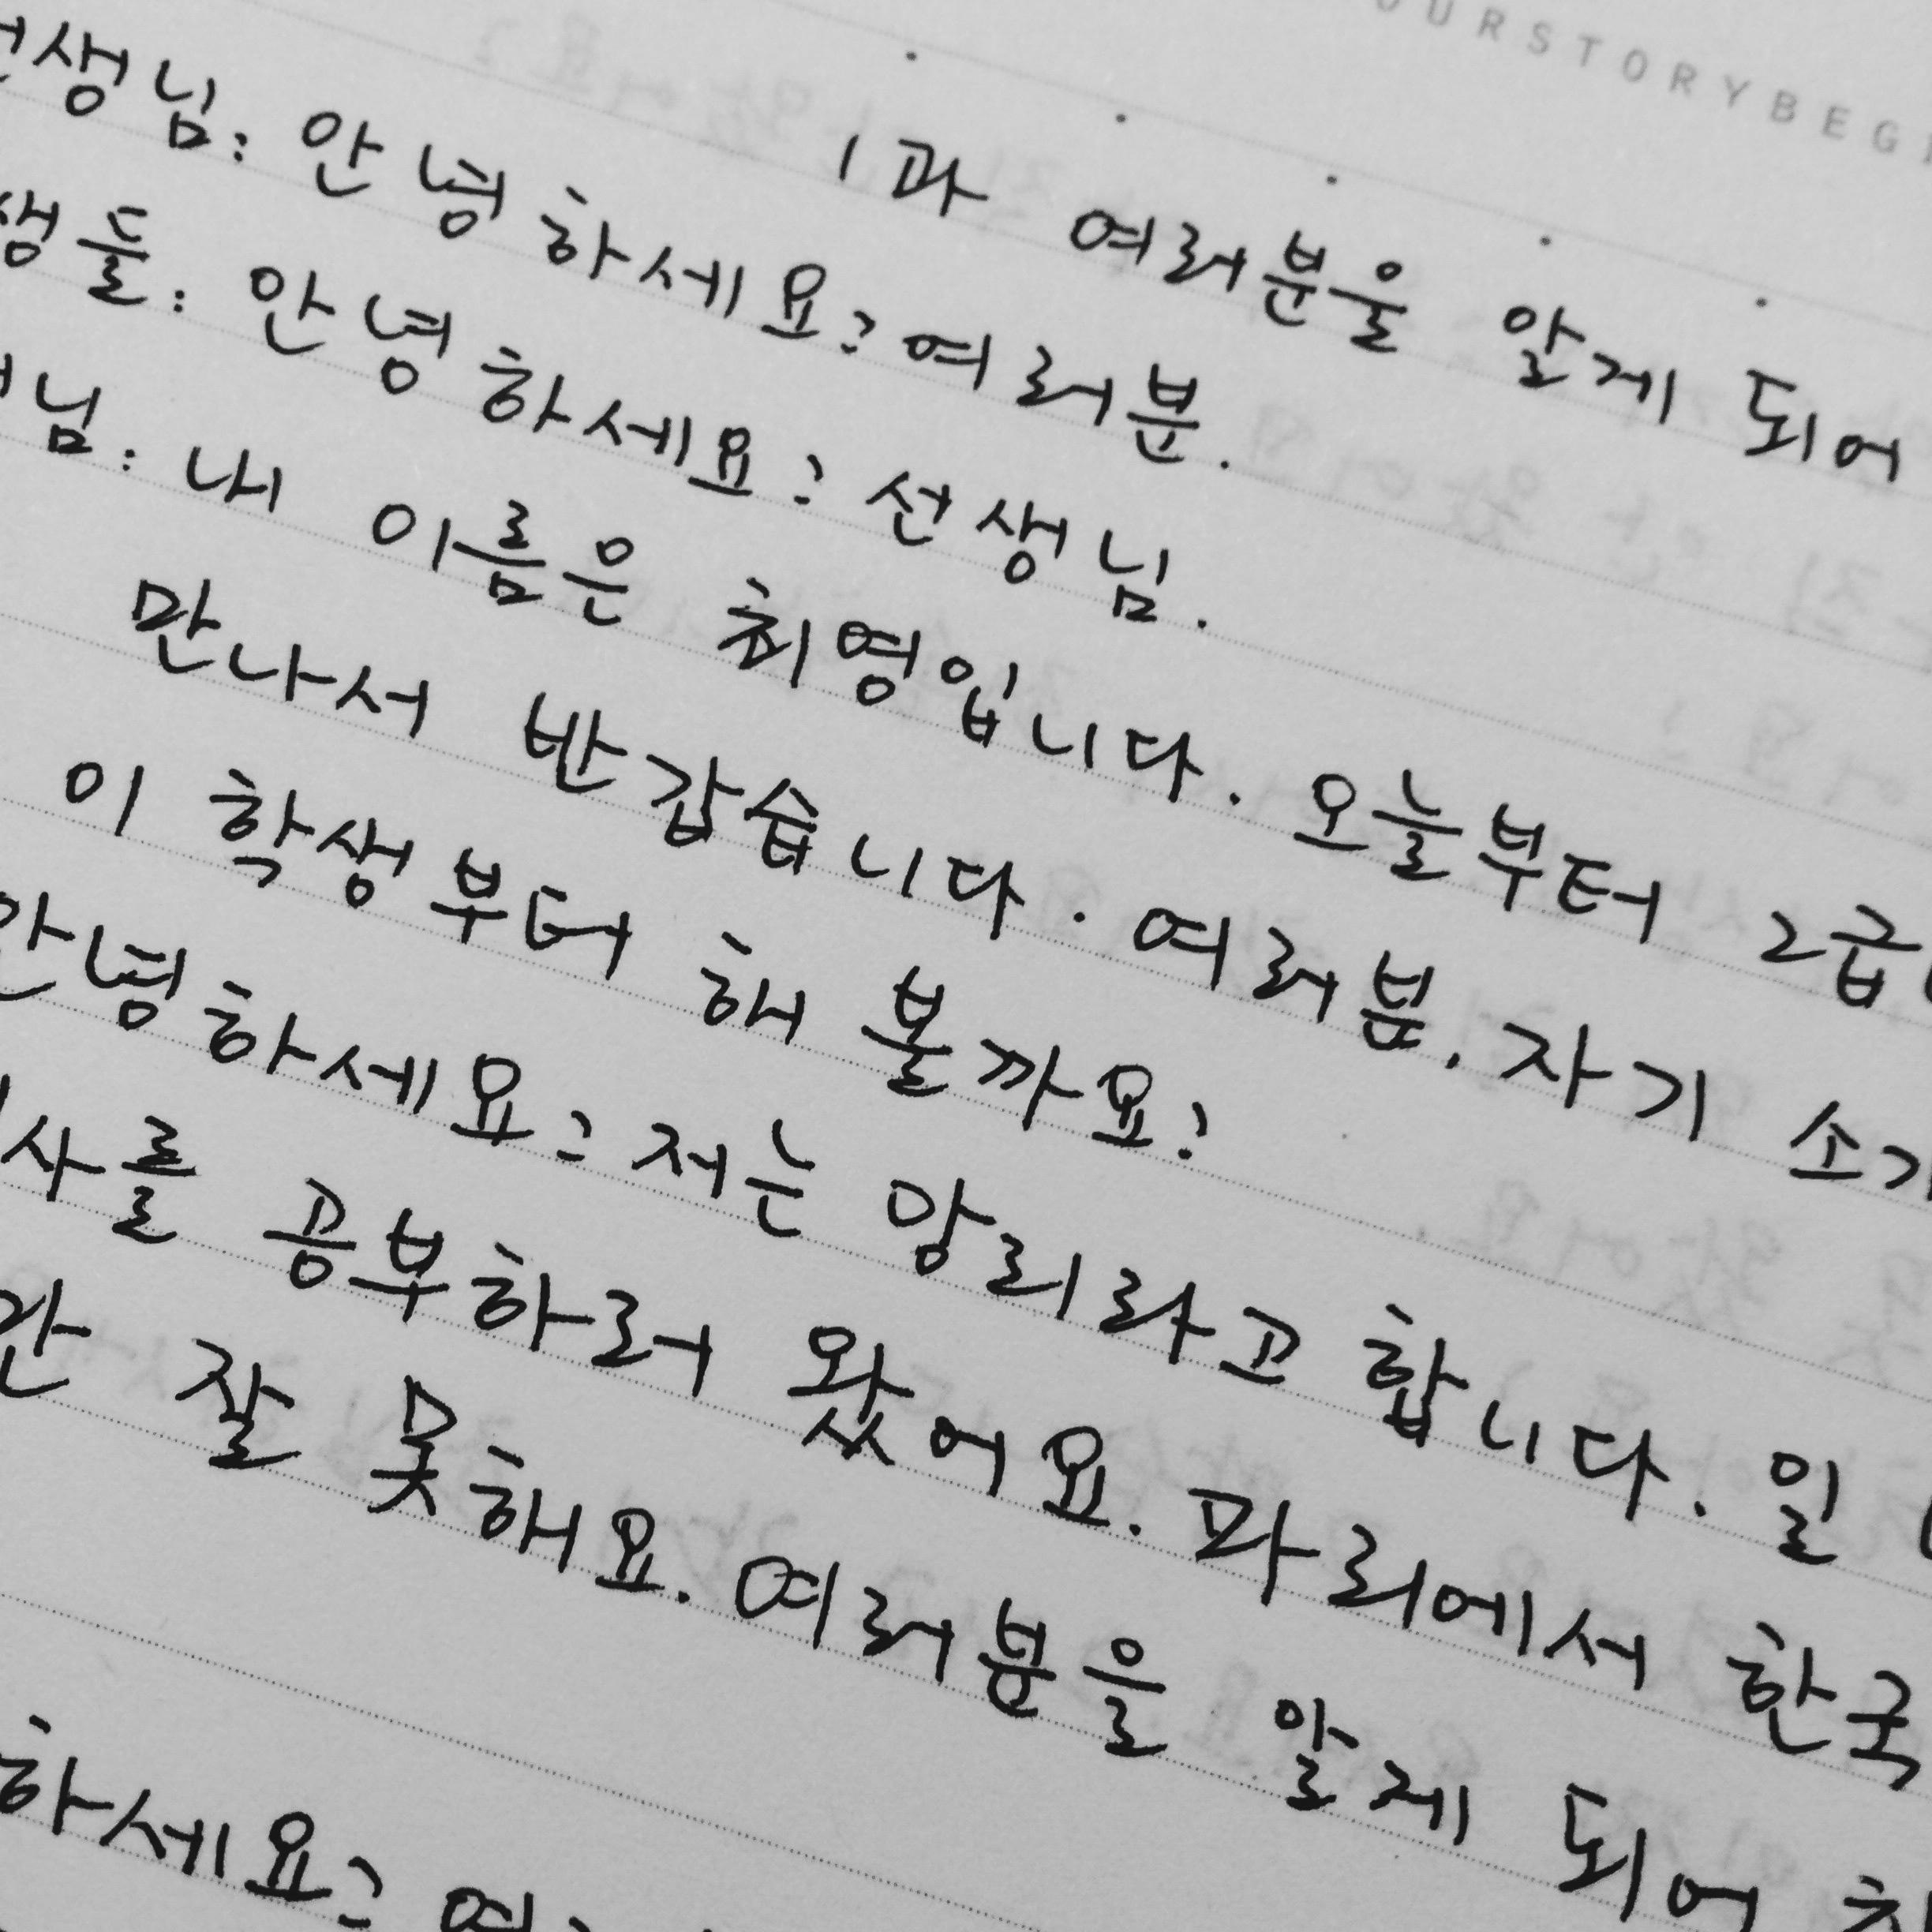 学习韩语字母表 - 24小时快速学会韩语口语发音_韩语24个基本字母-CSDN博客